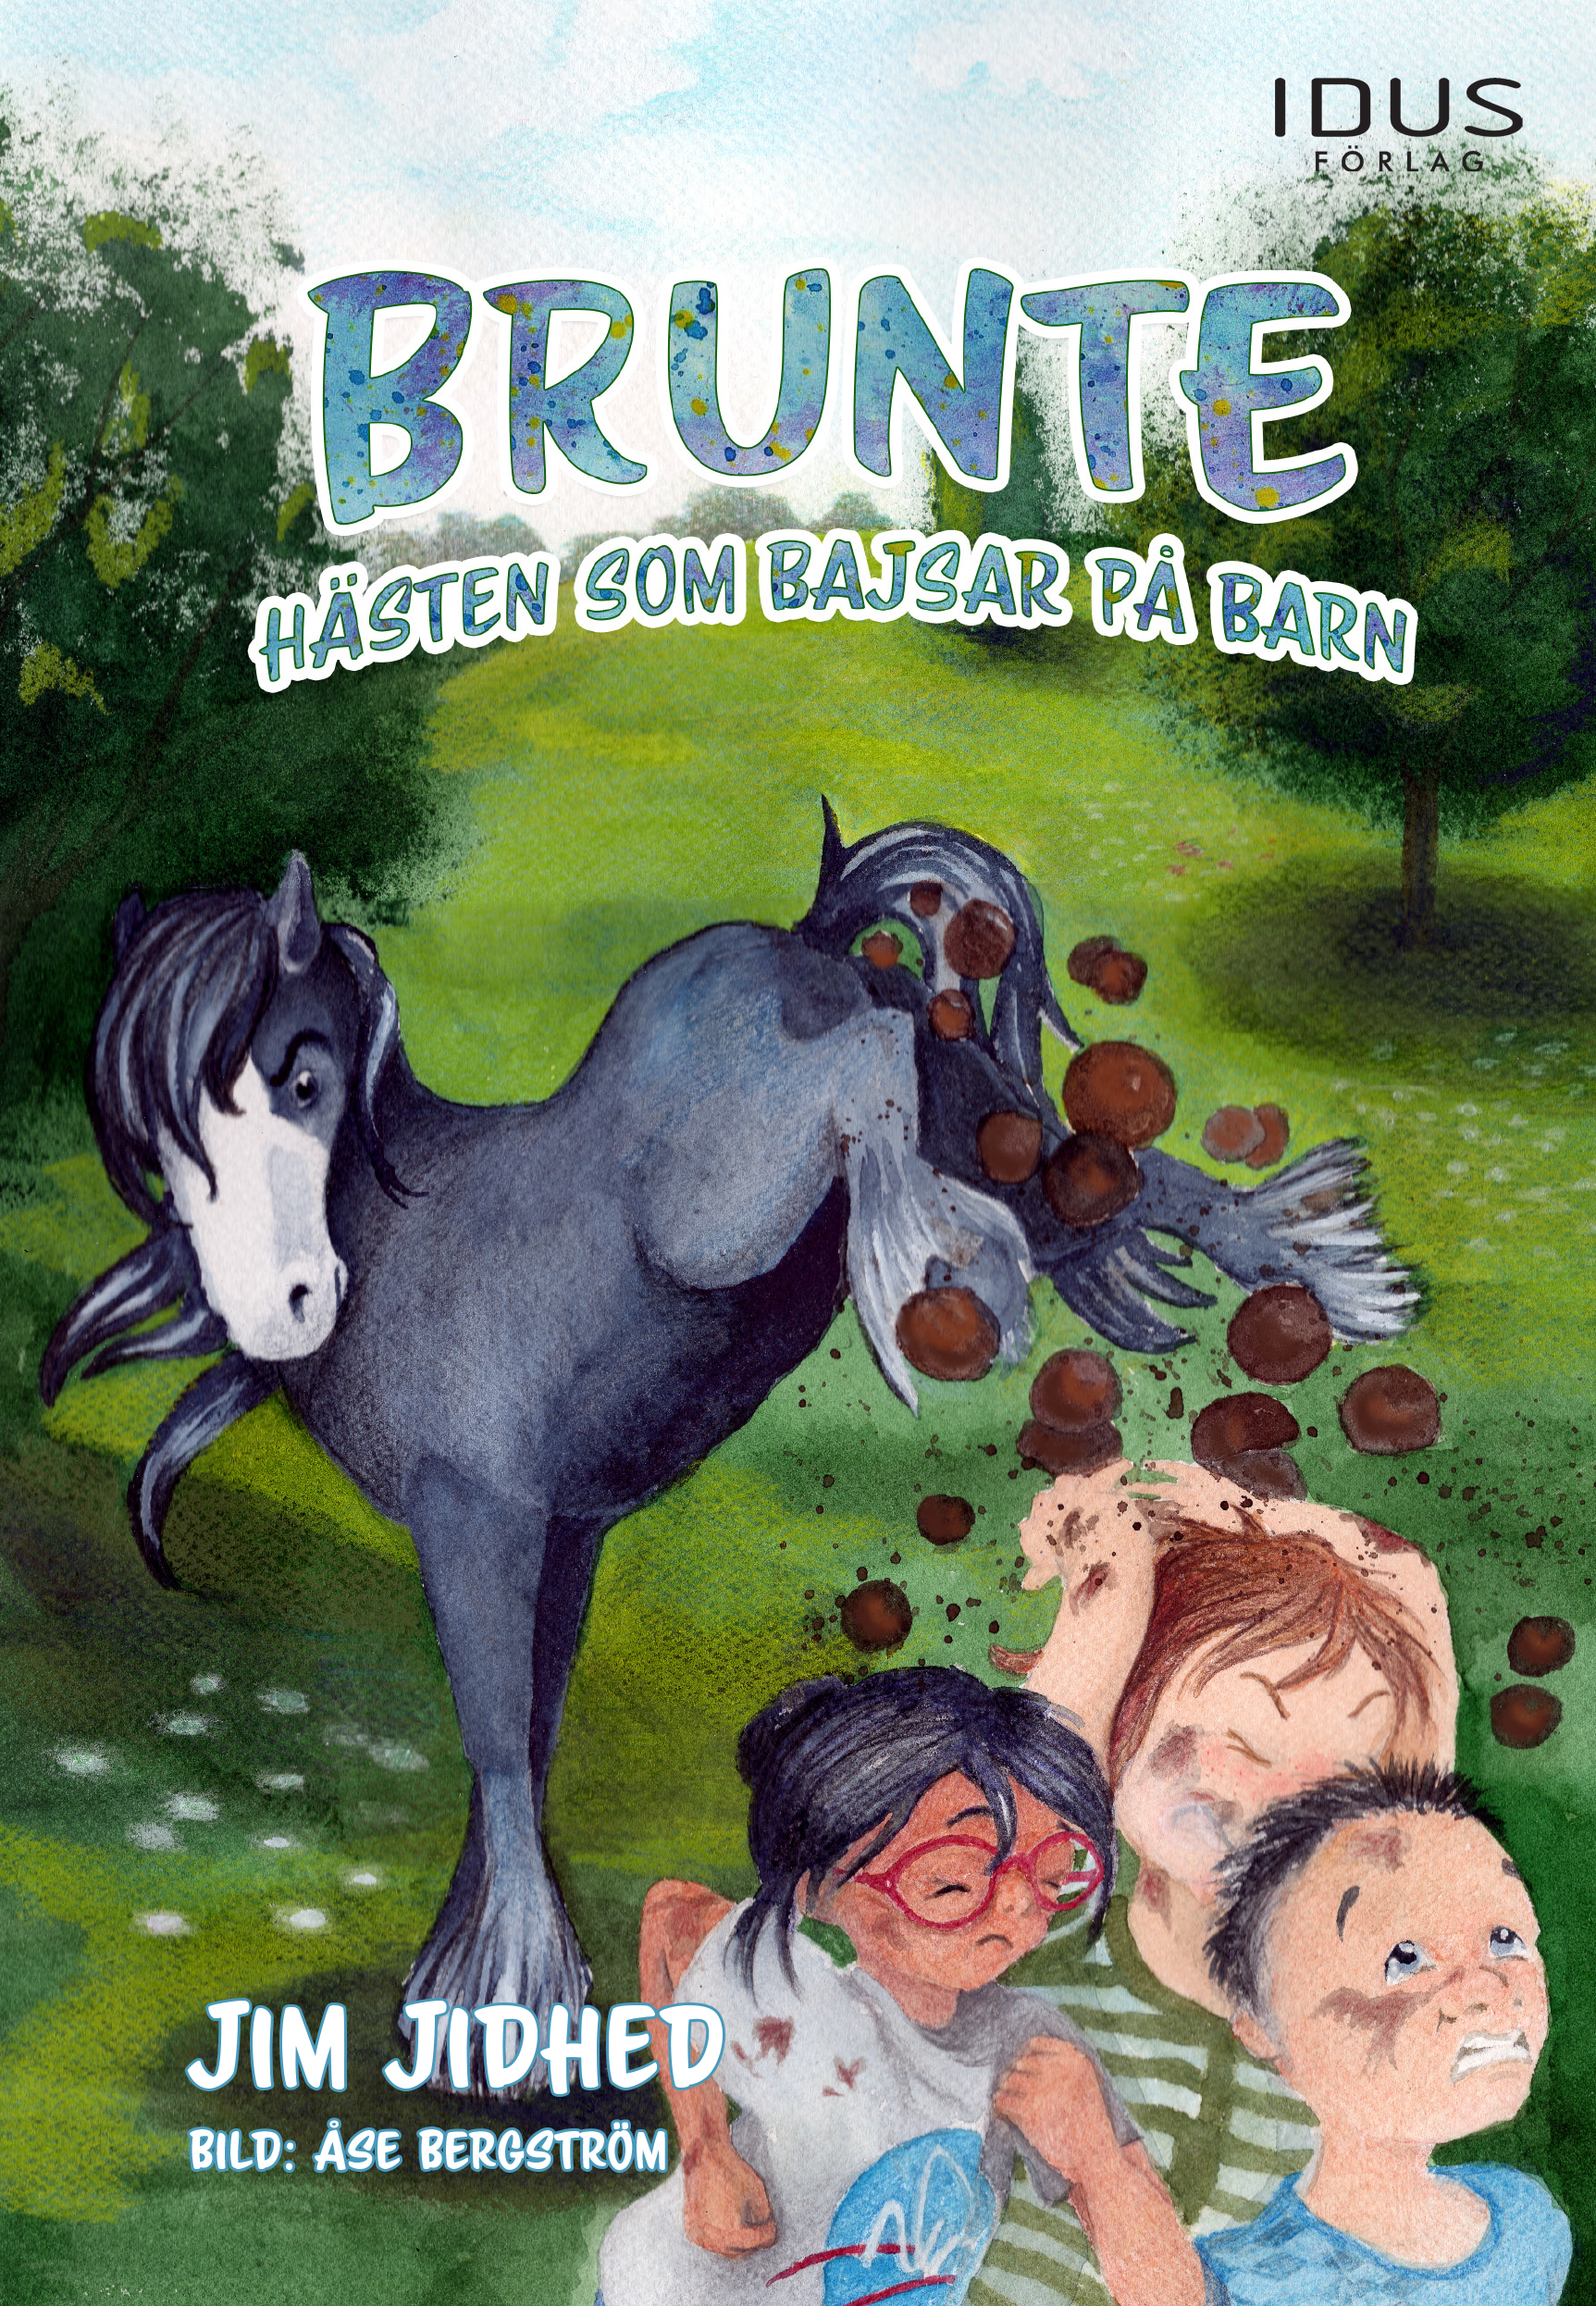 Brunte – hästen som bajsar på barn